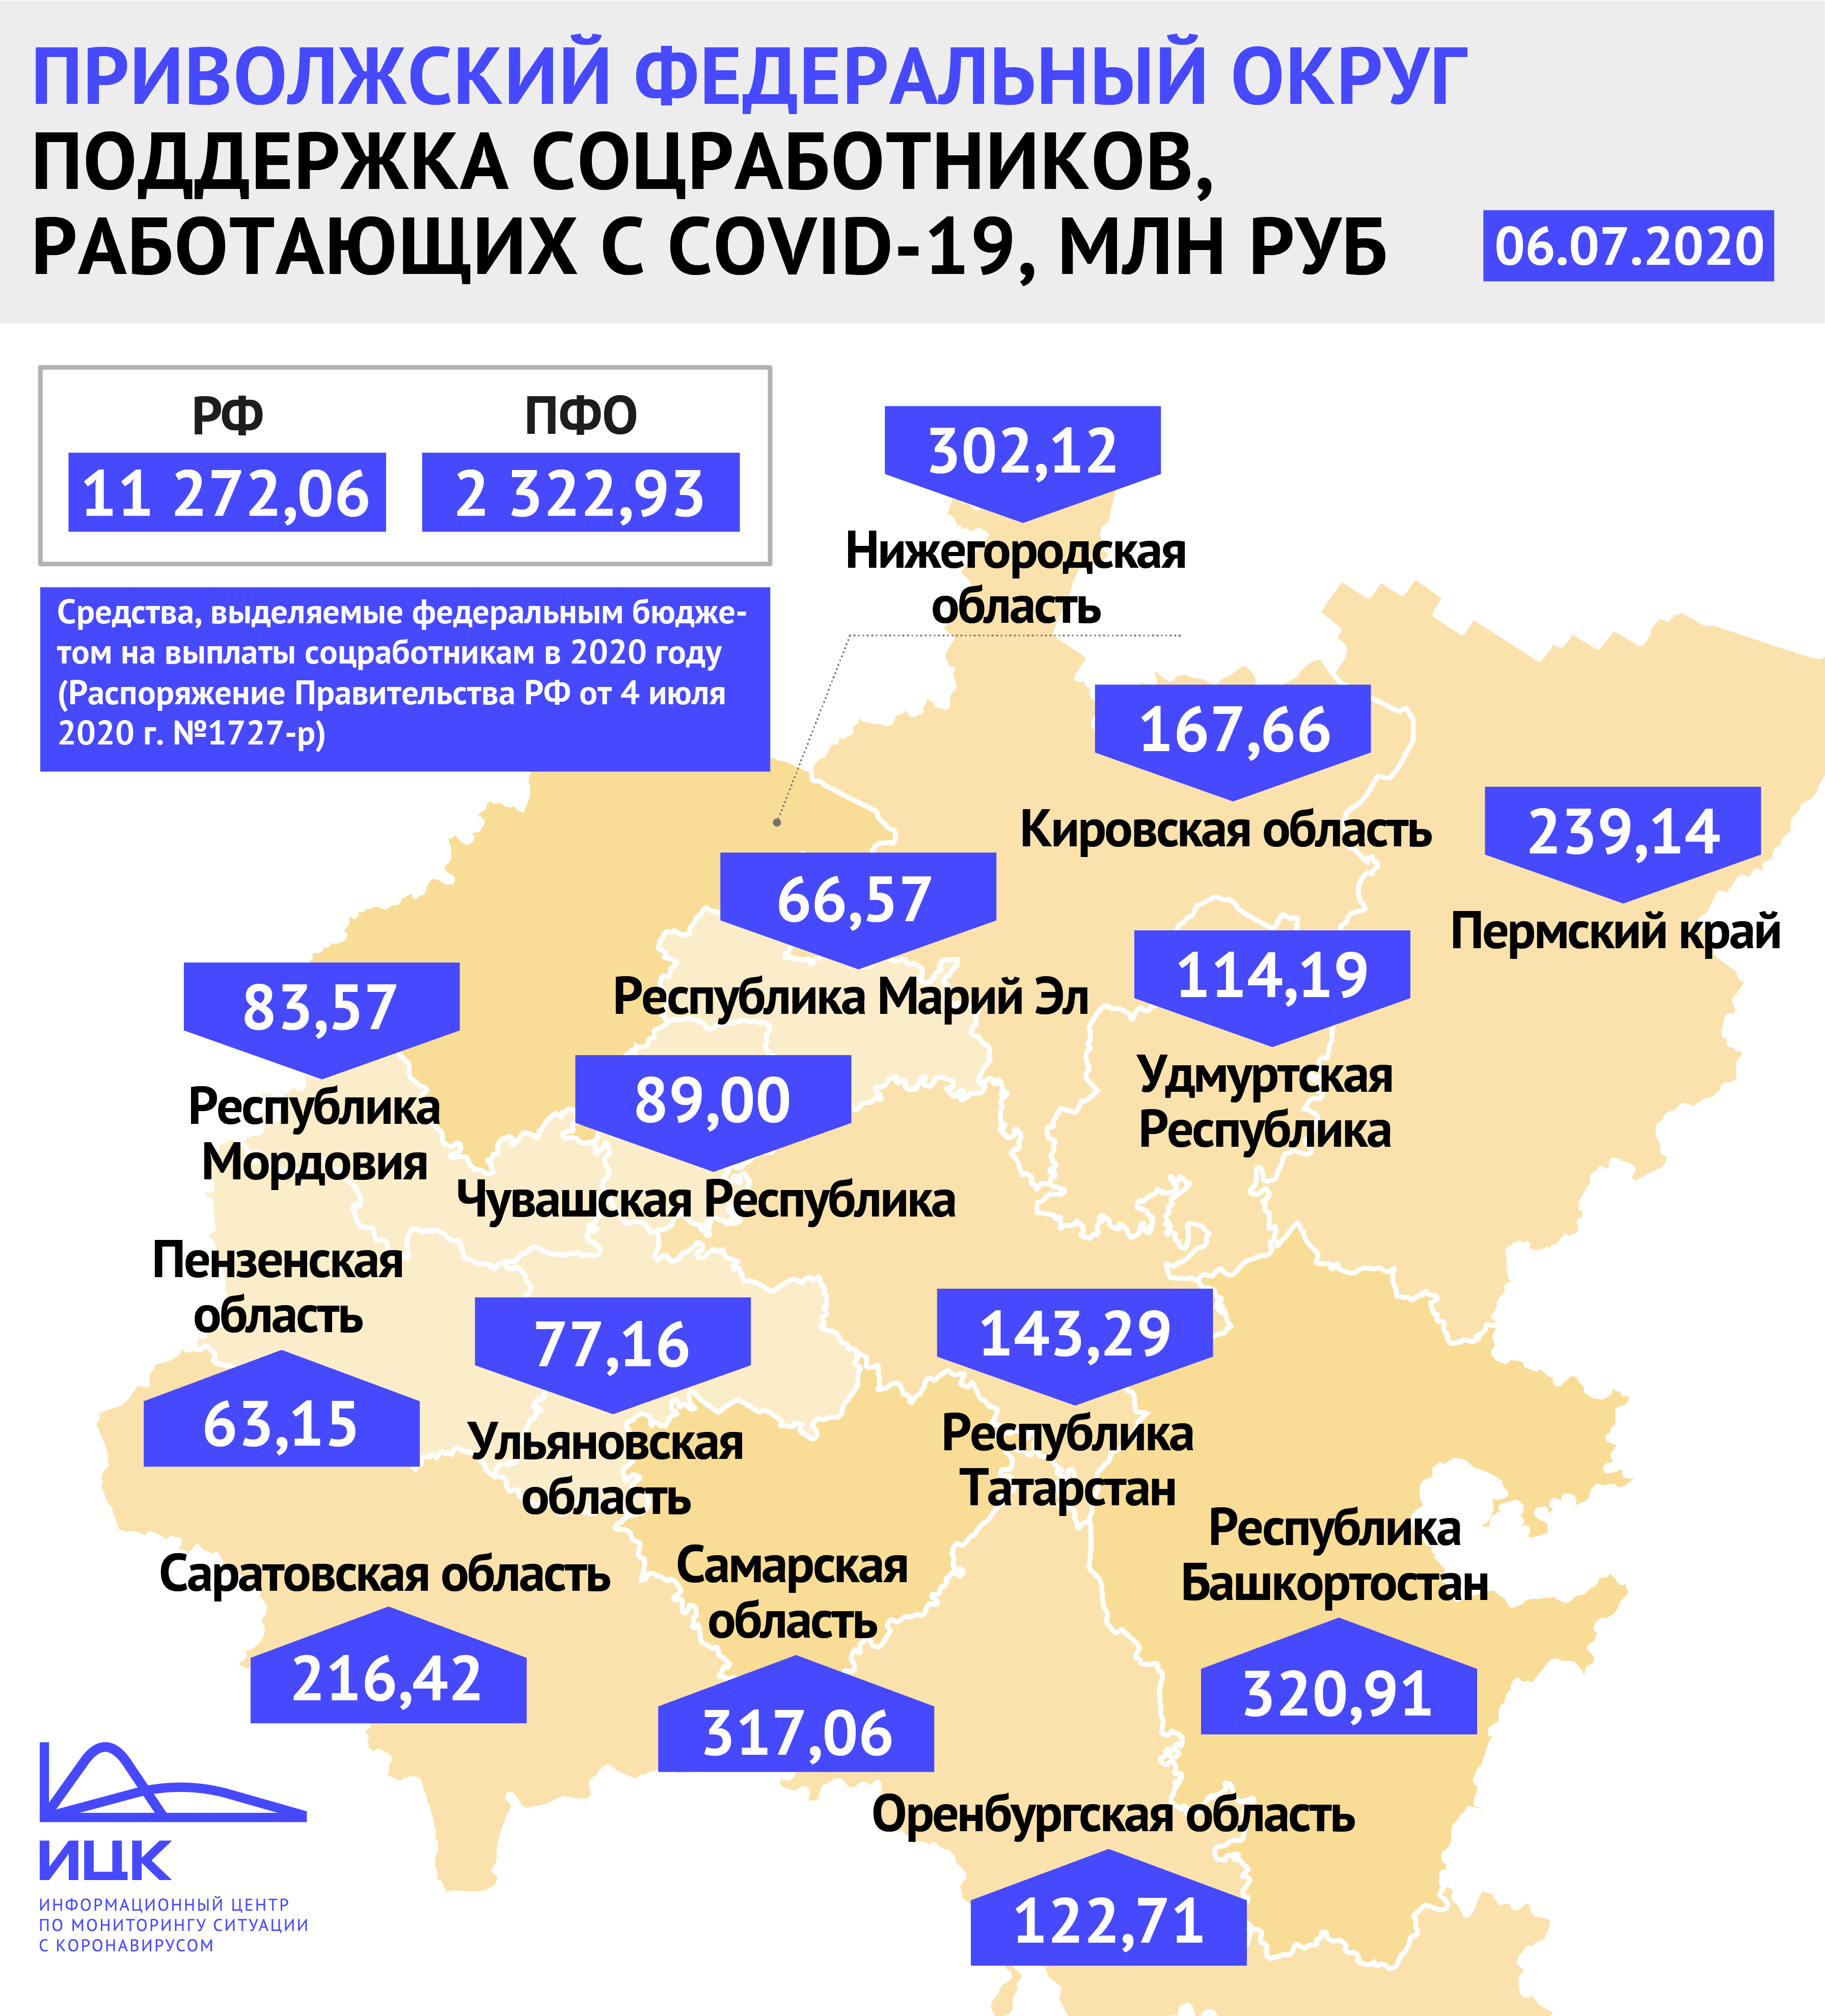 Правительство РФ выделит дополнительно 63,15 млн рублей Пензенской области